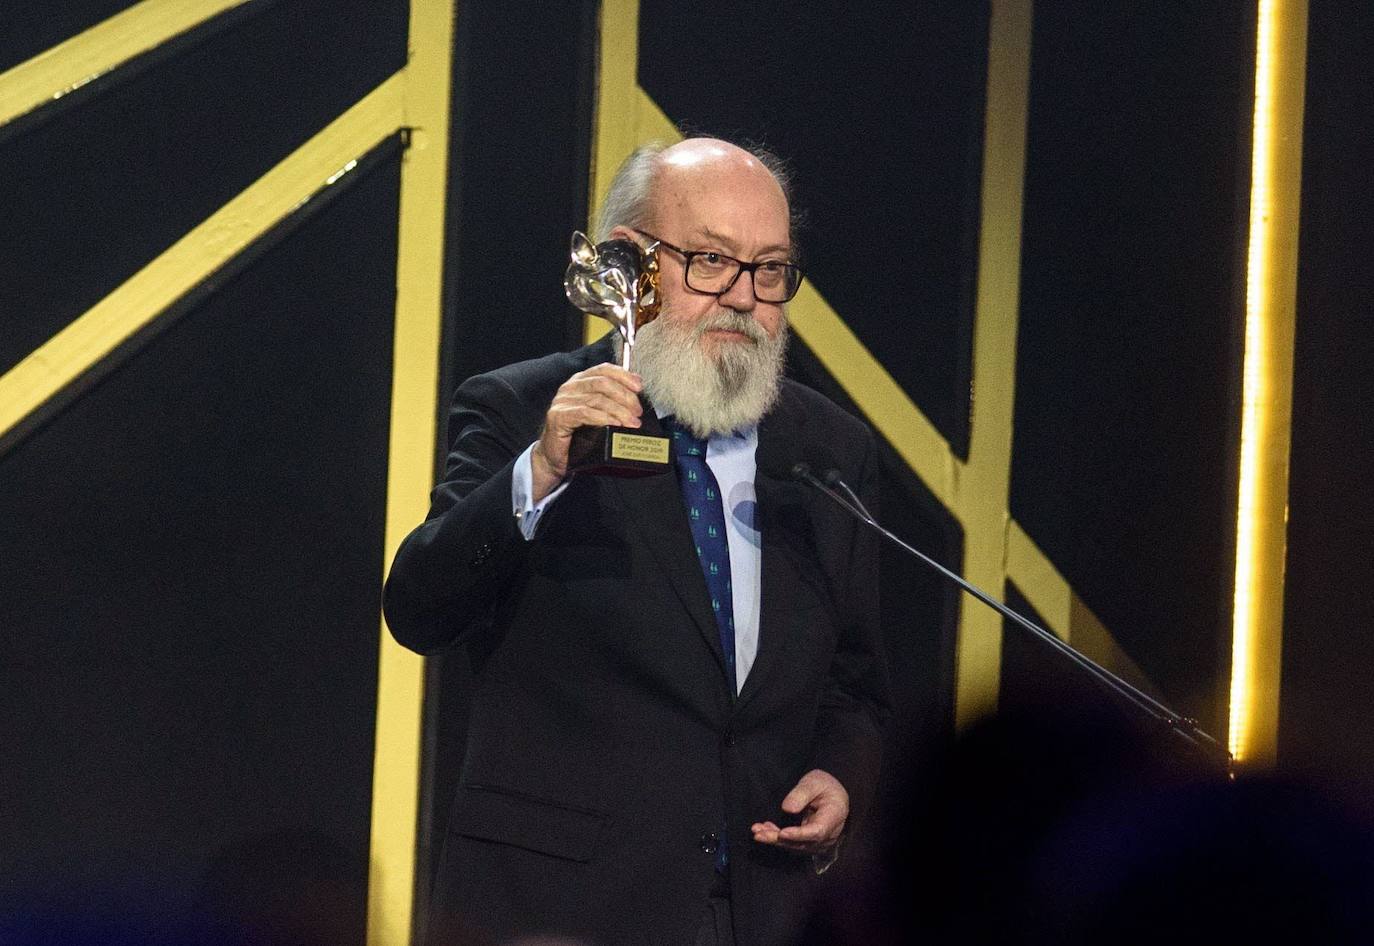 El director José Luis Cuerda, con el premio de honor, en la gala de los Premios Feroz 2019.